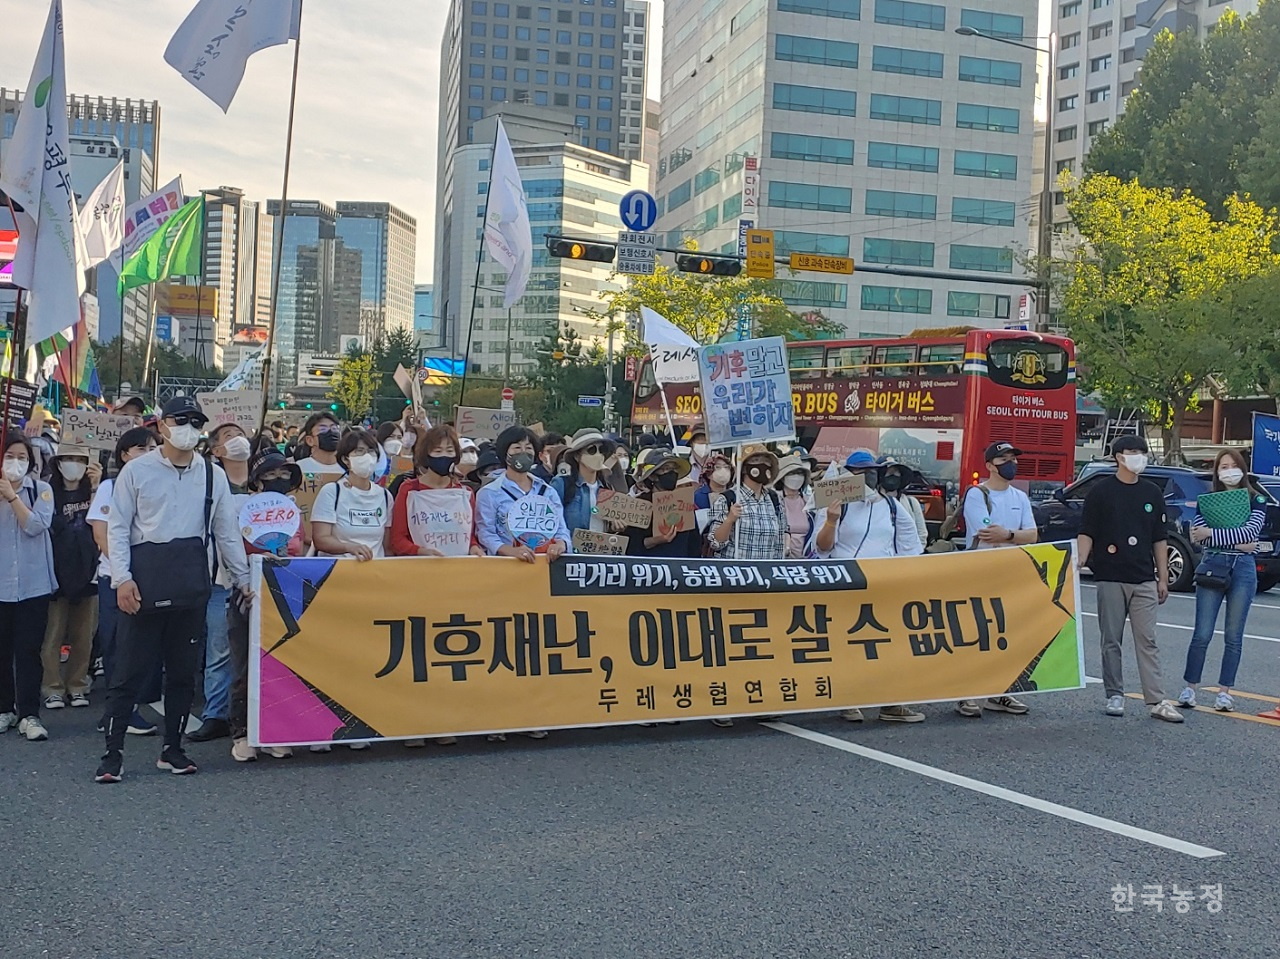 지난해 9월 24일 서울 도심에서 진행된 '9.24 기후정의행진'에 참가한 두레생협연합회 조합원들. 두레생협연합회는 올해 기후위기 대응을 위한 ‘카운드 두레 인(Count DURE In) 캠페인’을 전개한다.